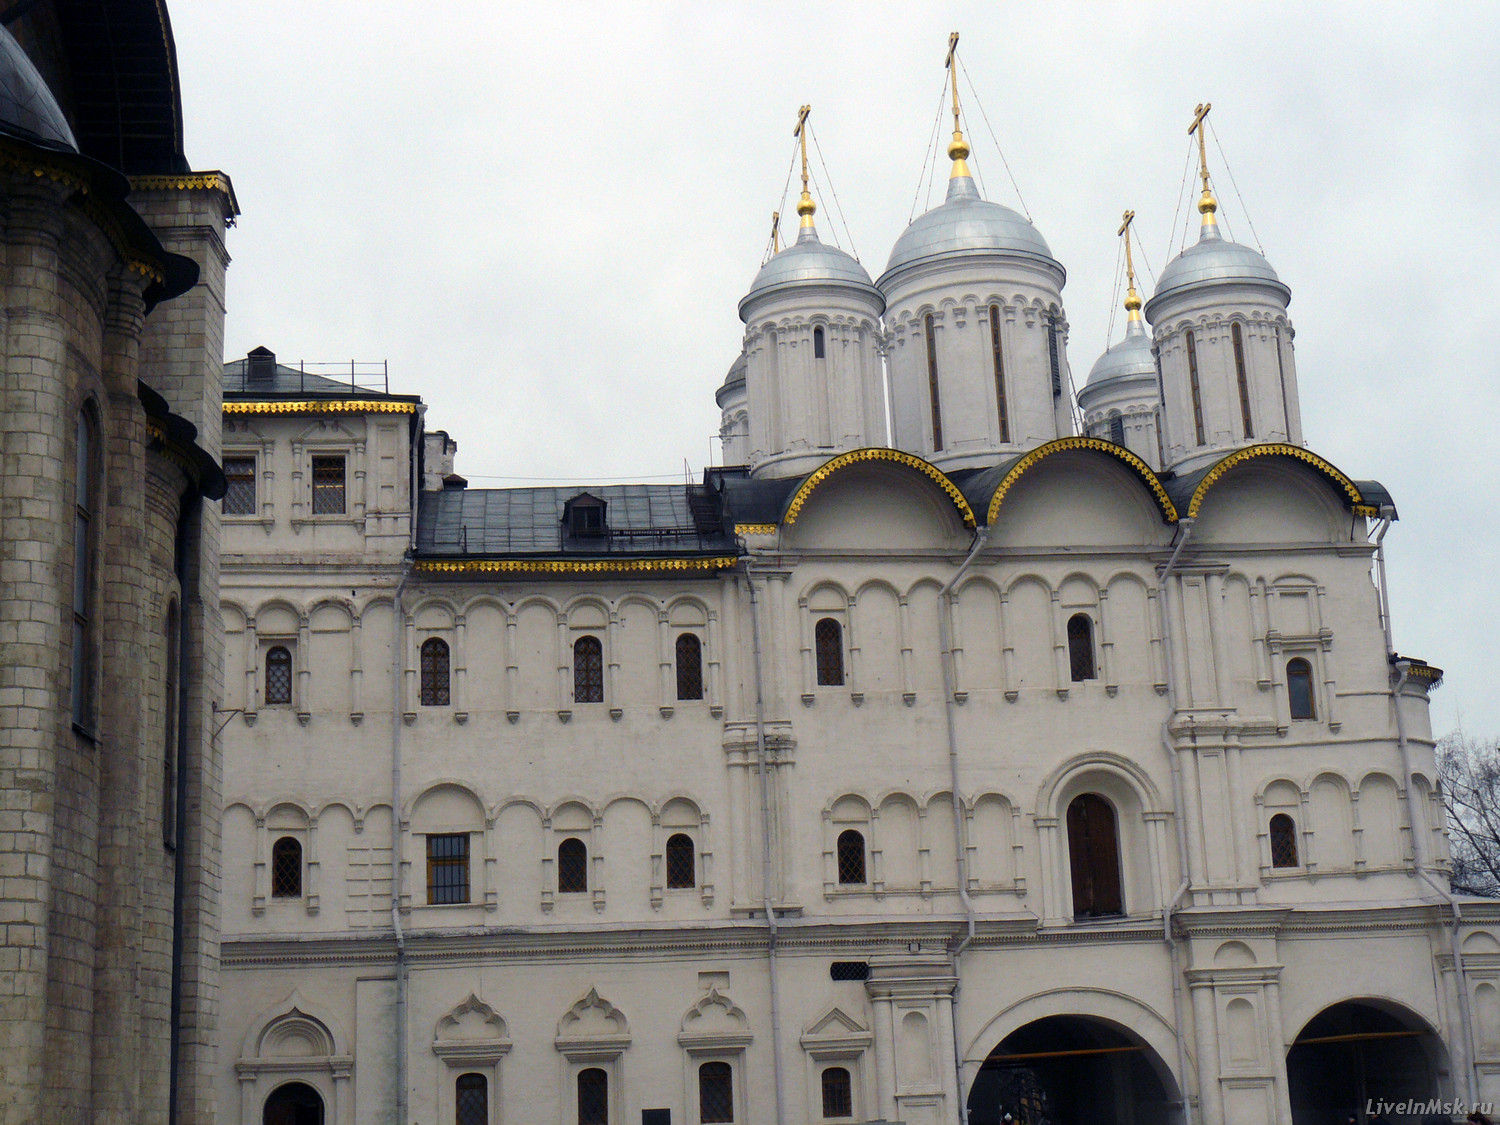 Патриаршие палаты с церковью Двенадцати апостолов, фото 2014 года